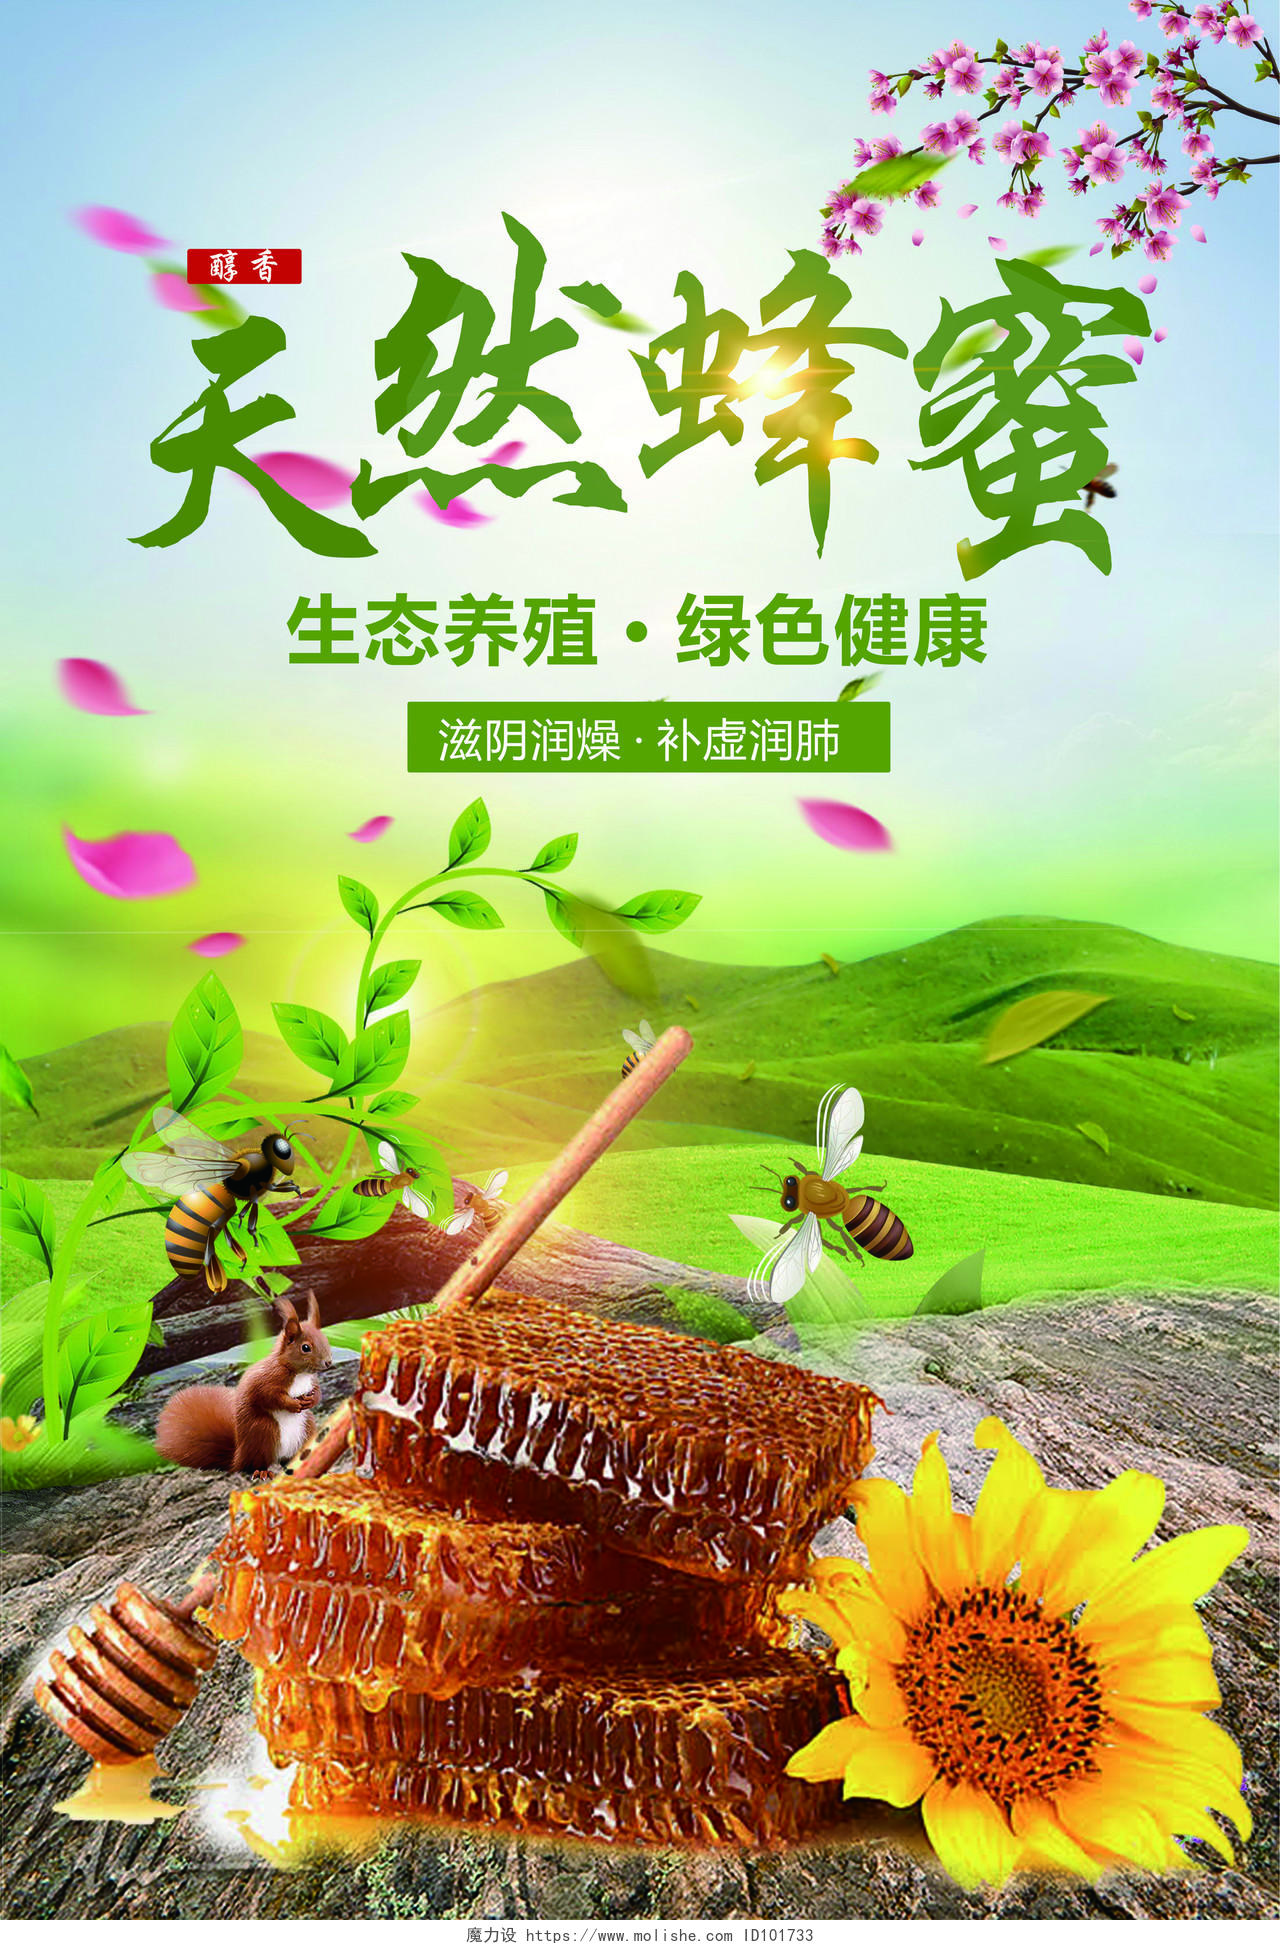 清新健康天然蜂蜜绿绿色健康保健品海报设计